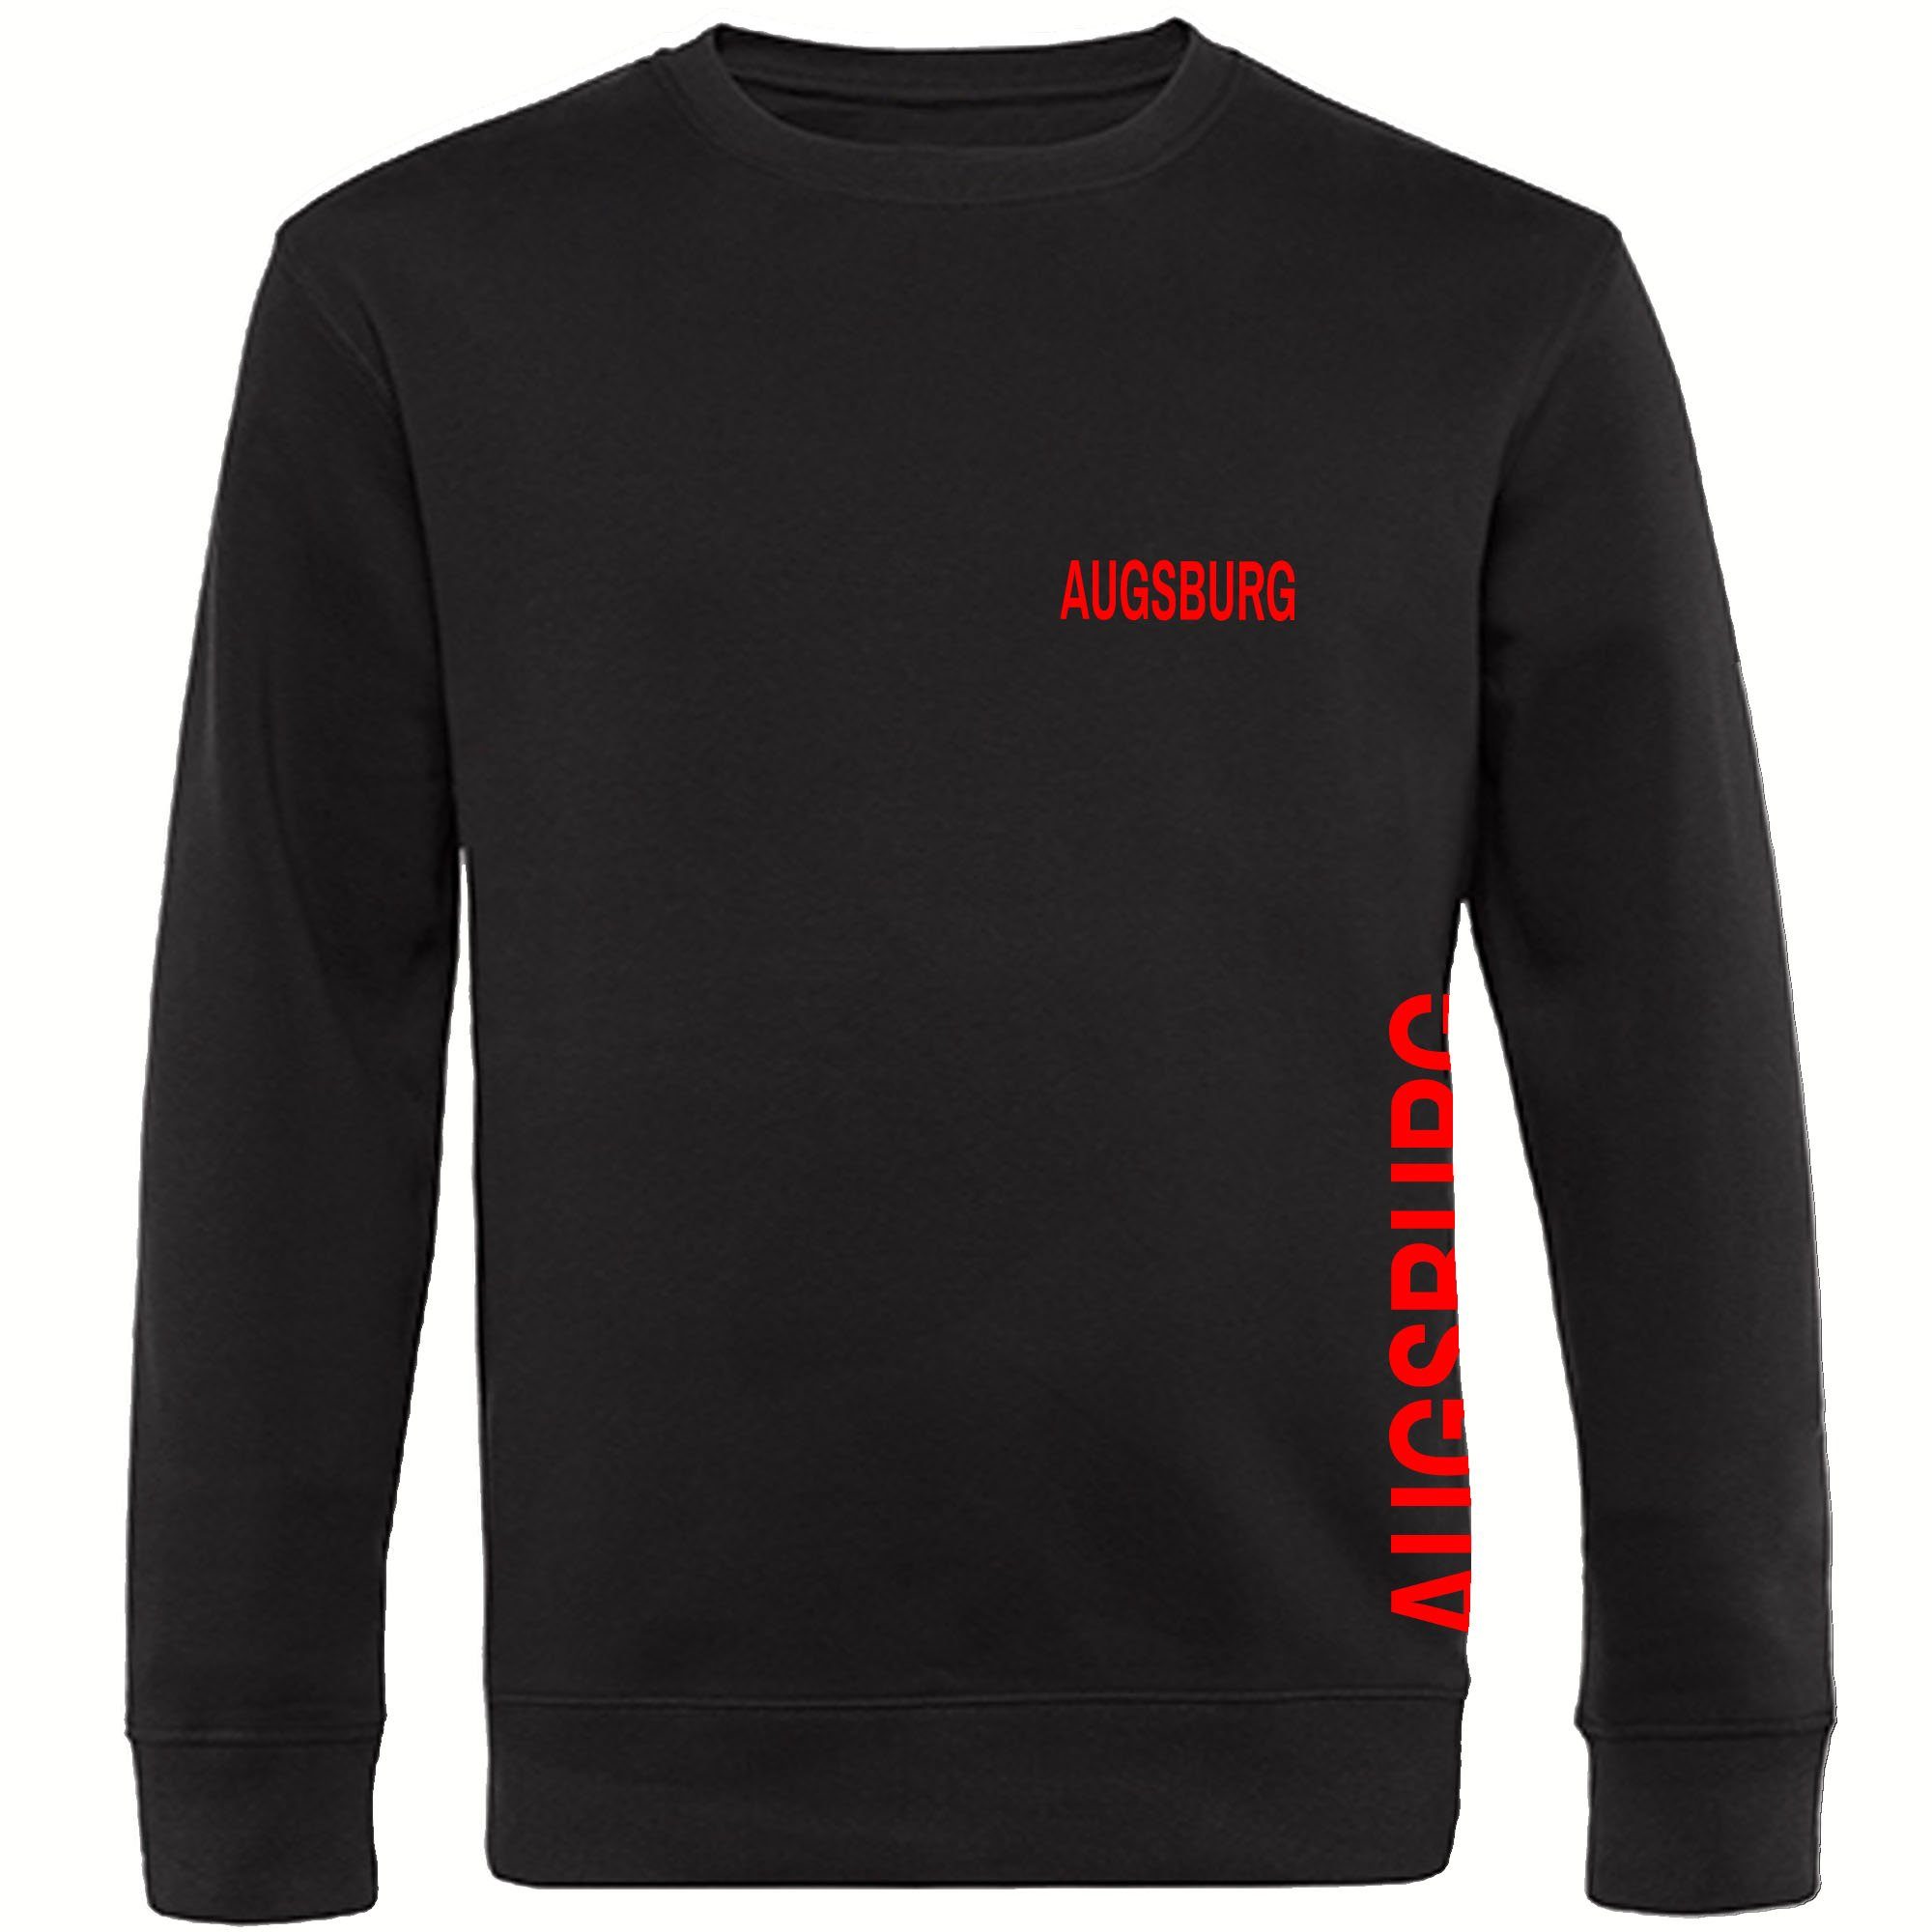 multifanshop Sweatshirt Augsburg - Brust & Seite - Pullover